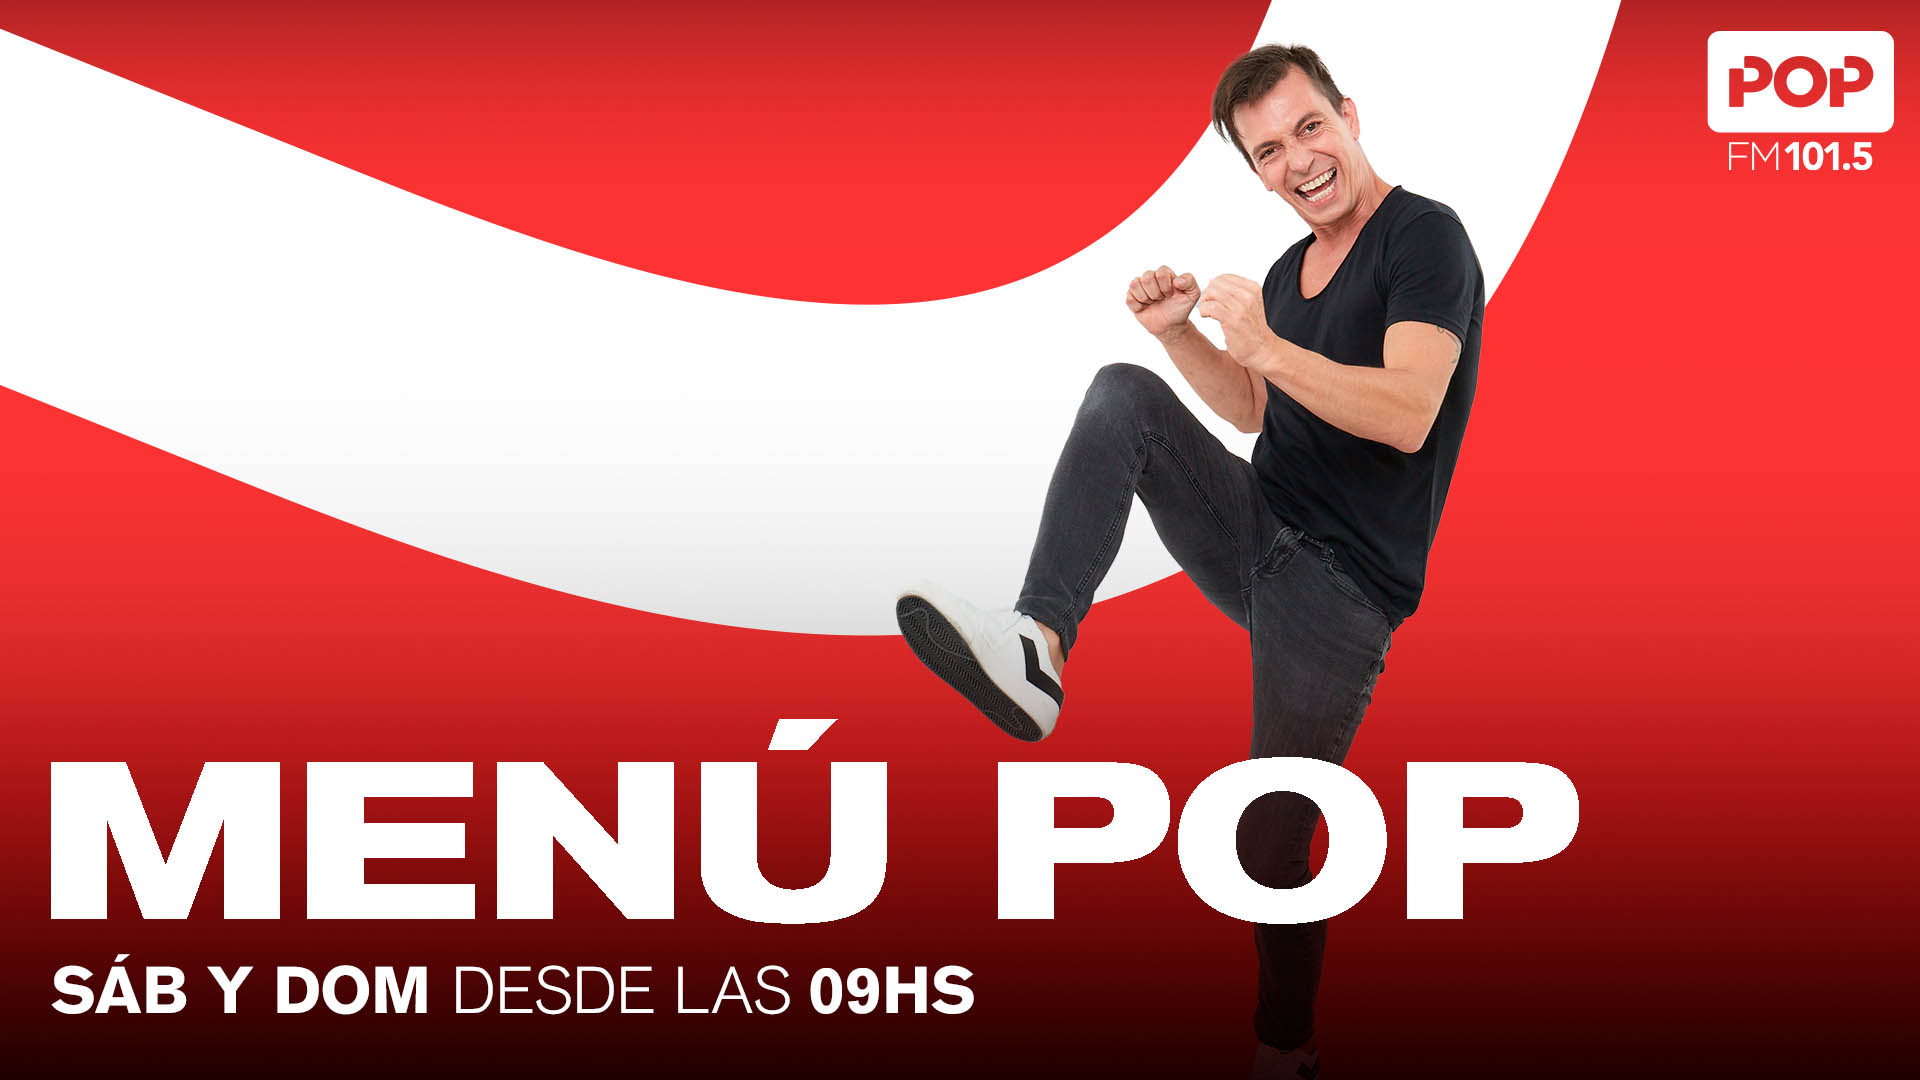 Pop Radio 101.5 FM on Twitter: "😃La mejor onda para empezar el finde está en #MenúPop ¡Pedinos el tema que te @luispineyro @paobarrionuevo @alvaronorro Escuchanos en vivo ⤵️ 📻101.5 FM 💻Youtube